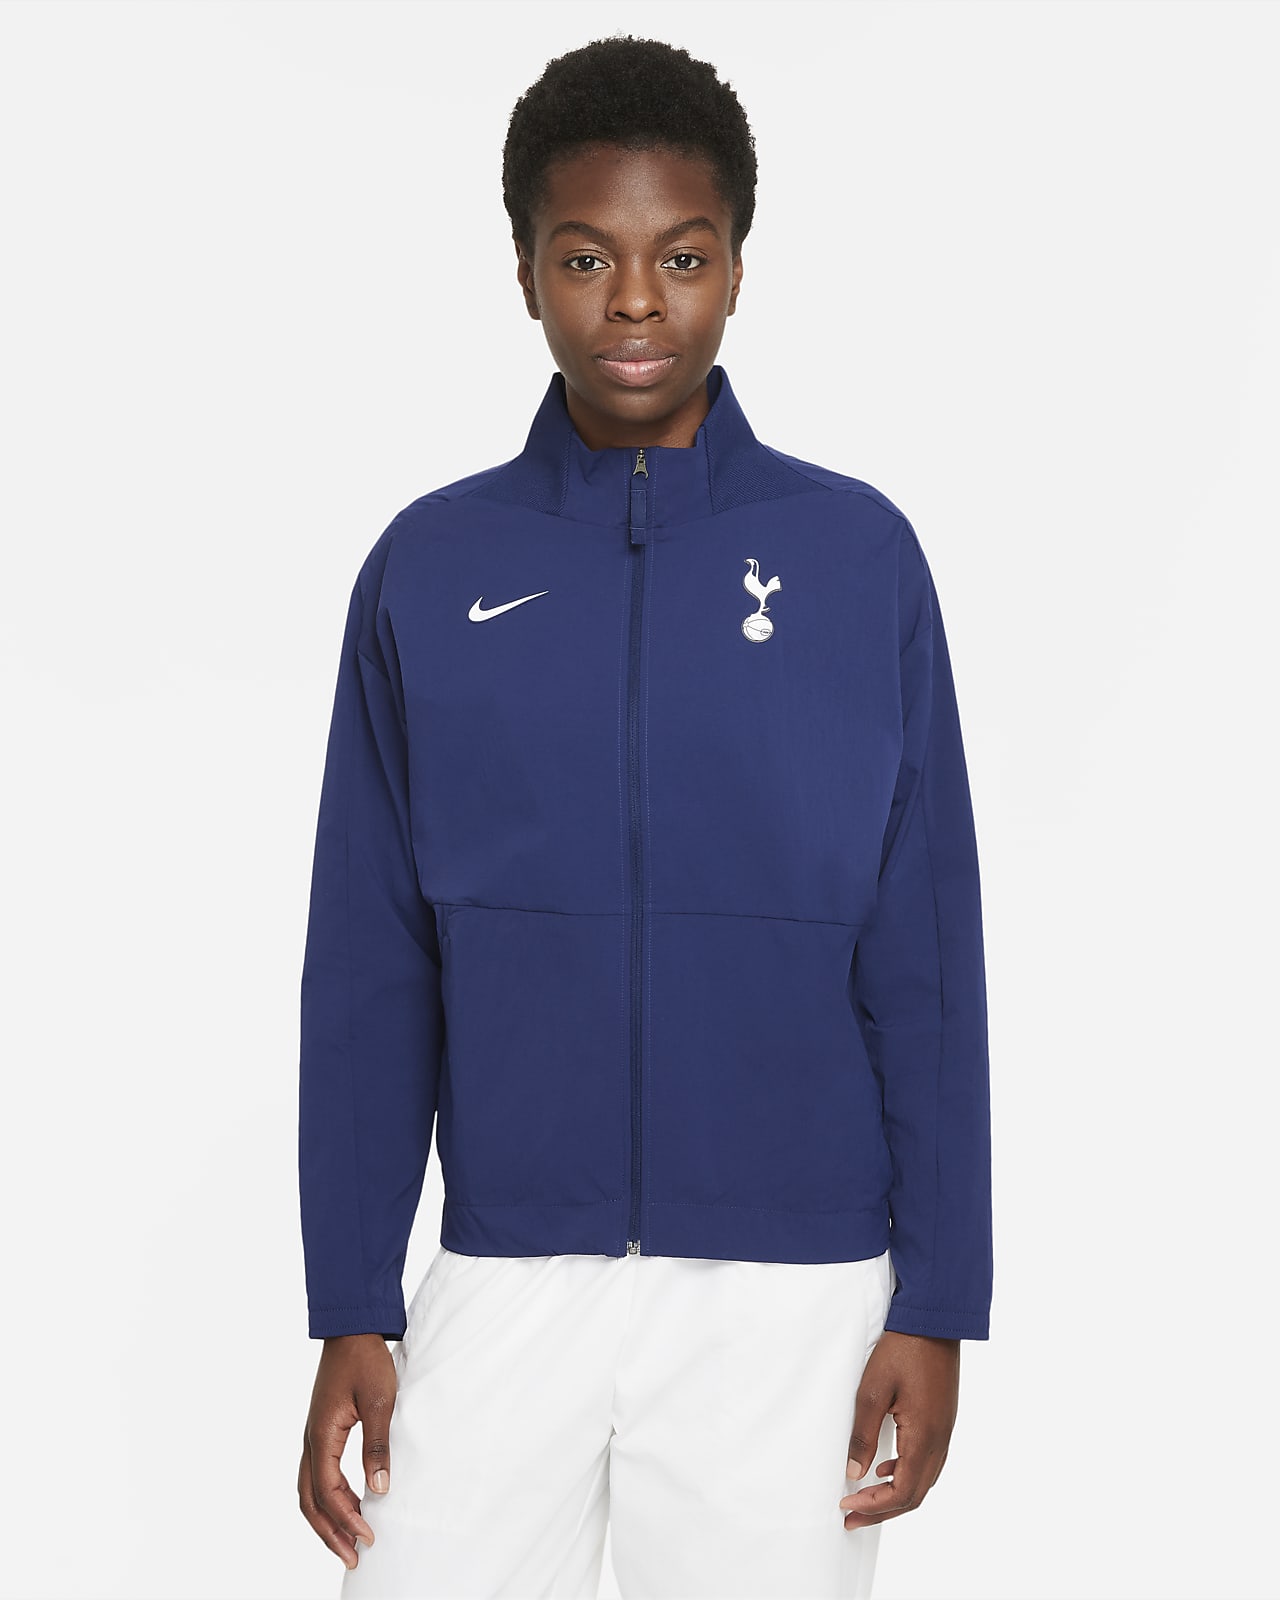 Tottenham Hotspur Women's Nike Dri-FIT Football Jacket. Nike CA